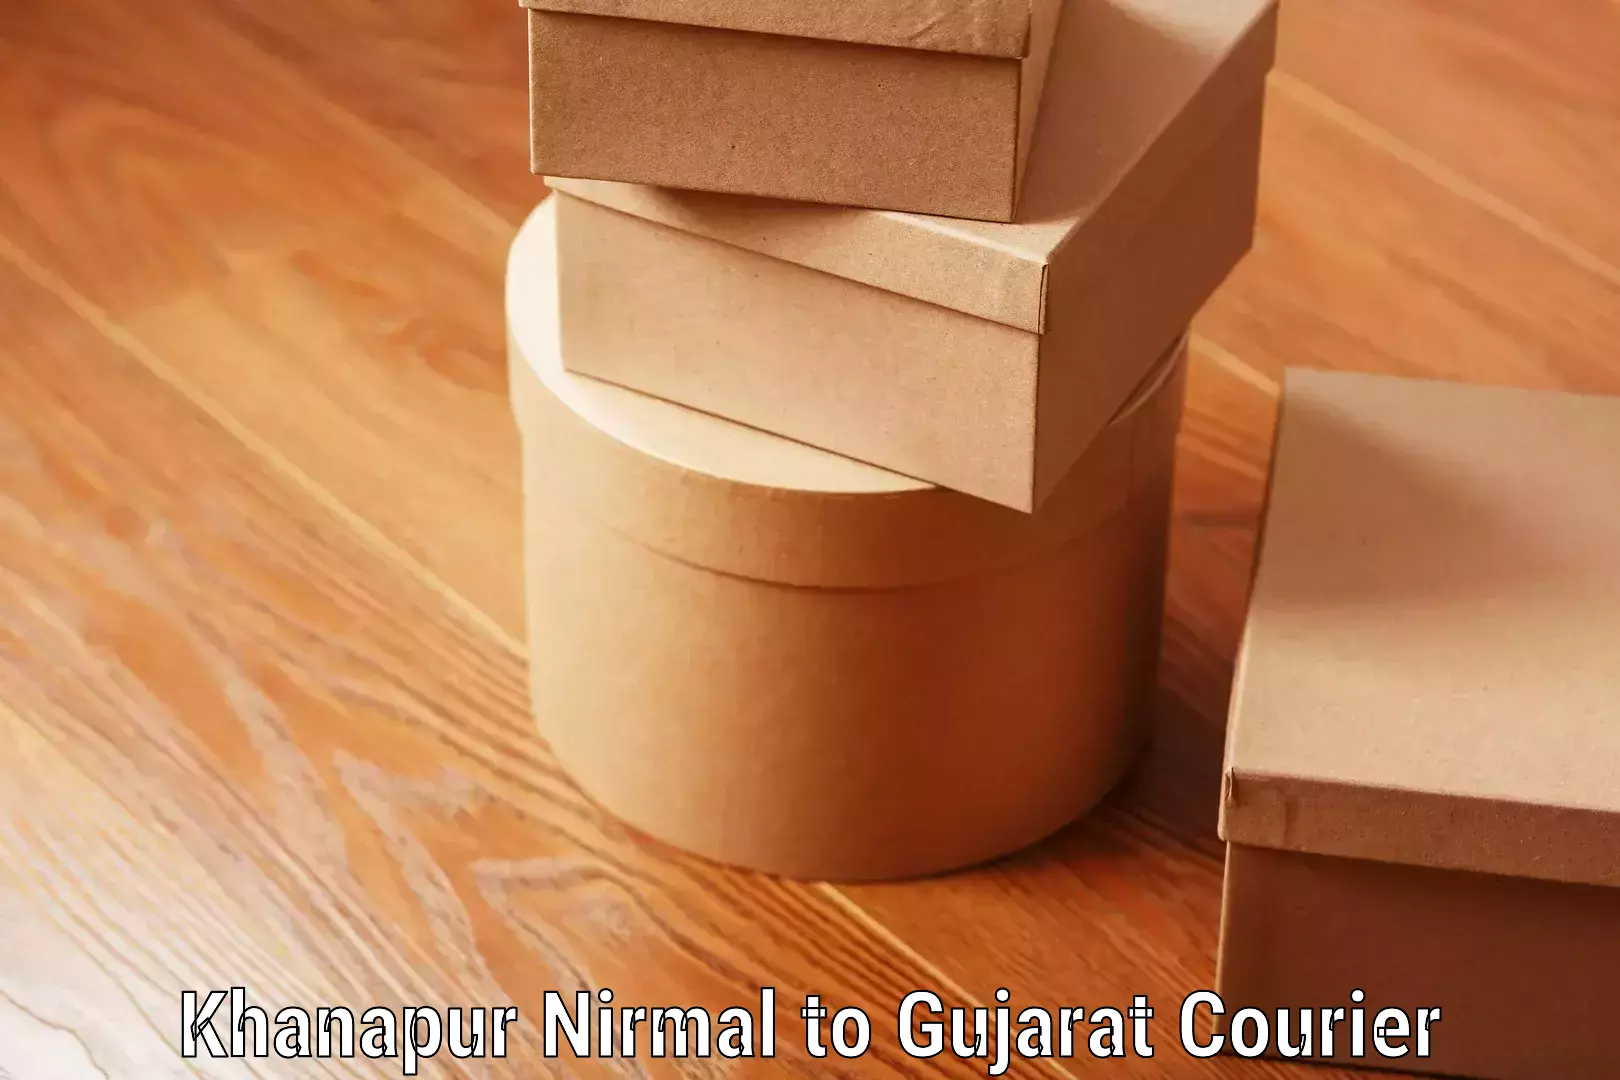 Luggage shipment strategy Khanapur Nirmal to Gujarat